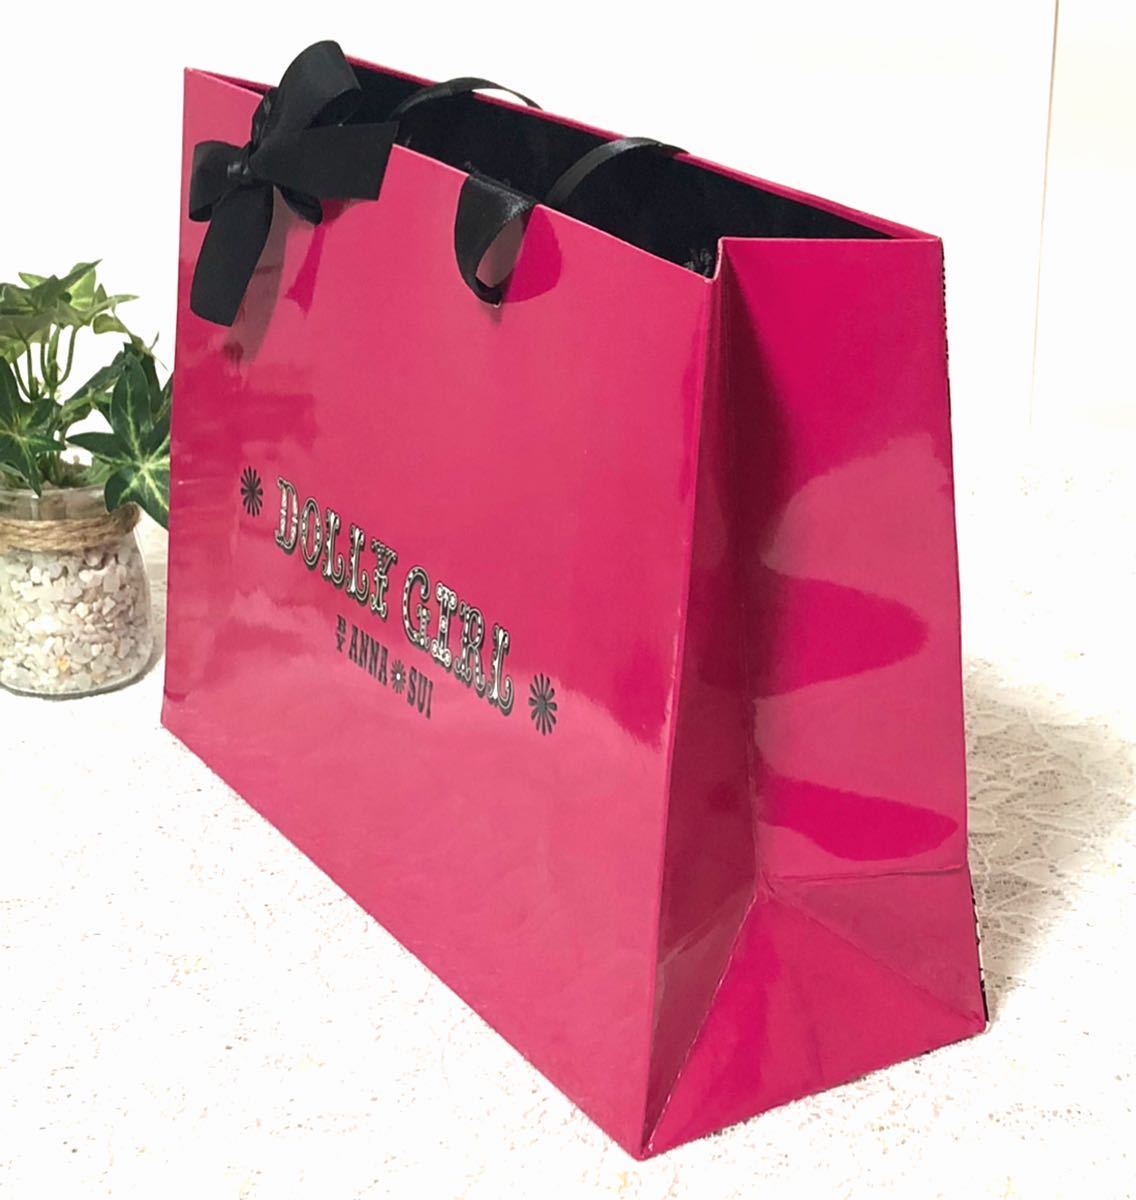 アナスイ 「 ANNA SUI DOLLY GIRL 」ショッパー (484) ショップ袋 紙袋 ブランド袋 29×20.5×10cm ギフト ラッピング ピンク 折らずに配送_画像4